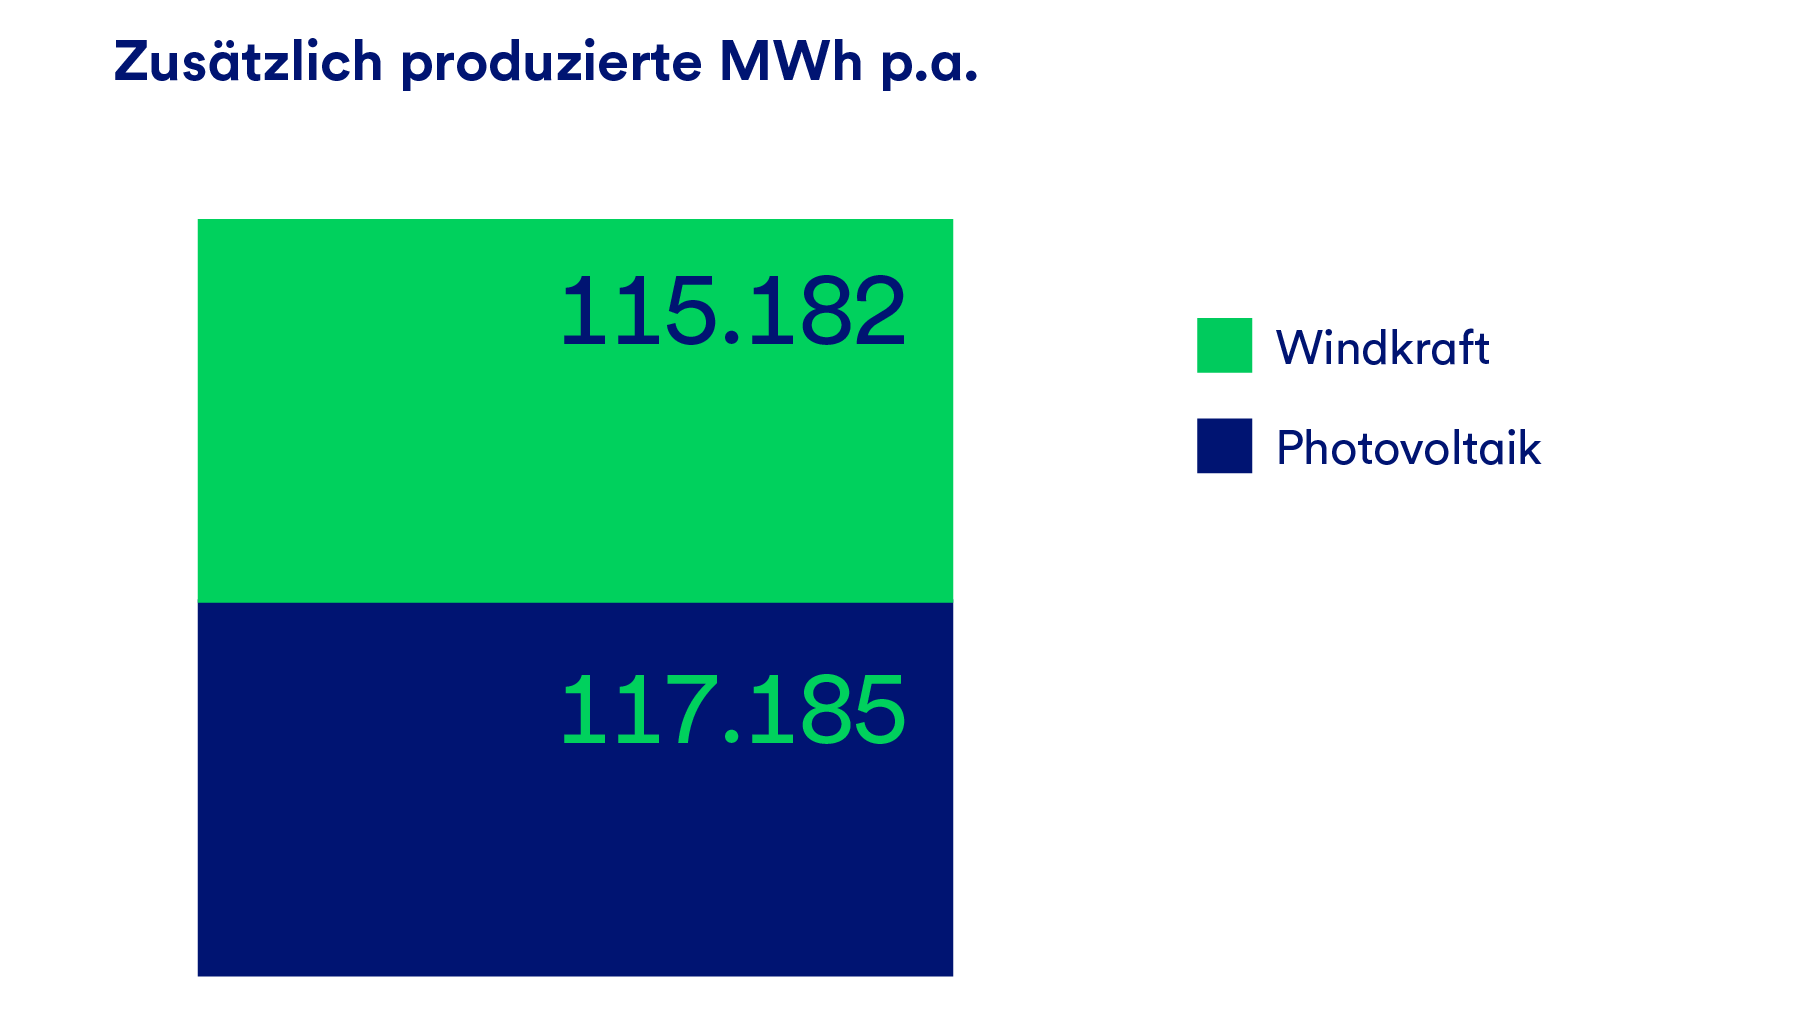 Eine Grafik, die die zusätzlich produzierten MWh p.a. darstellt, aufgeteilt nach Windkraft und Photovoltaik.